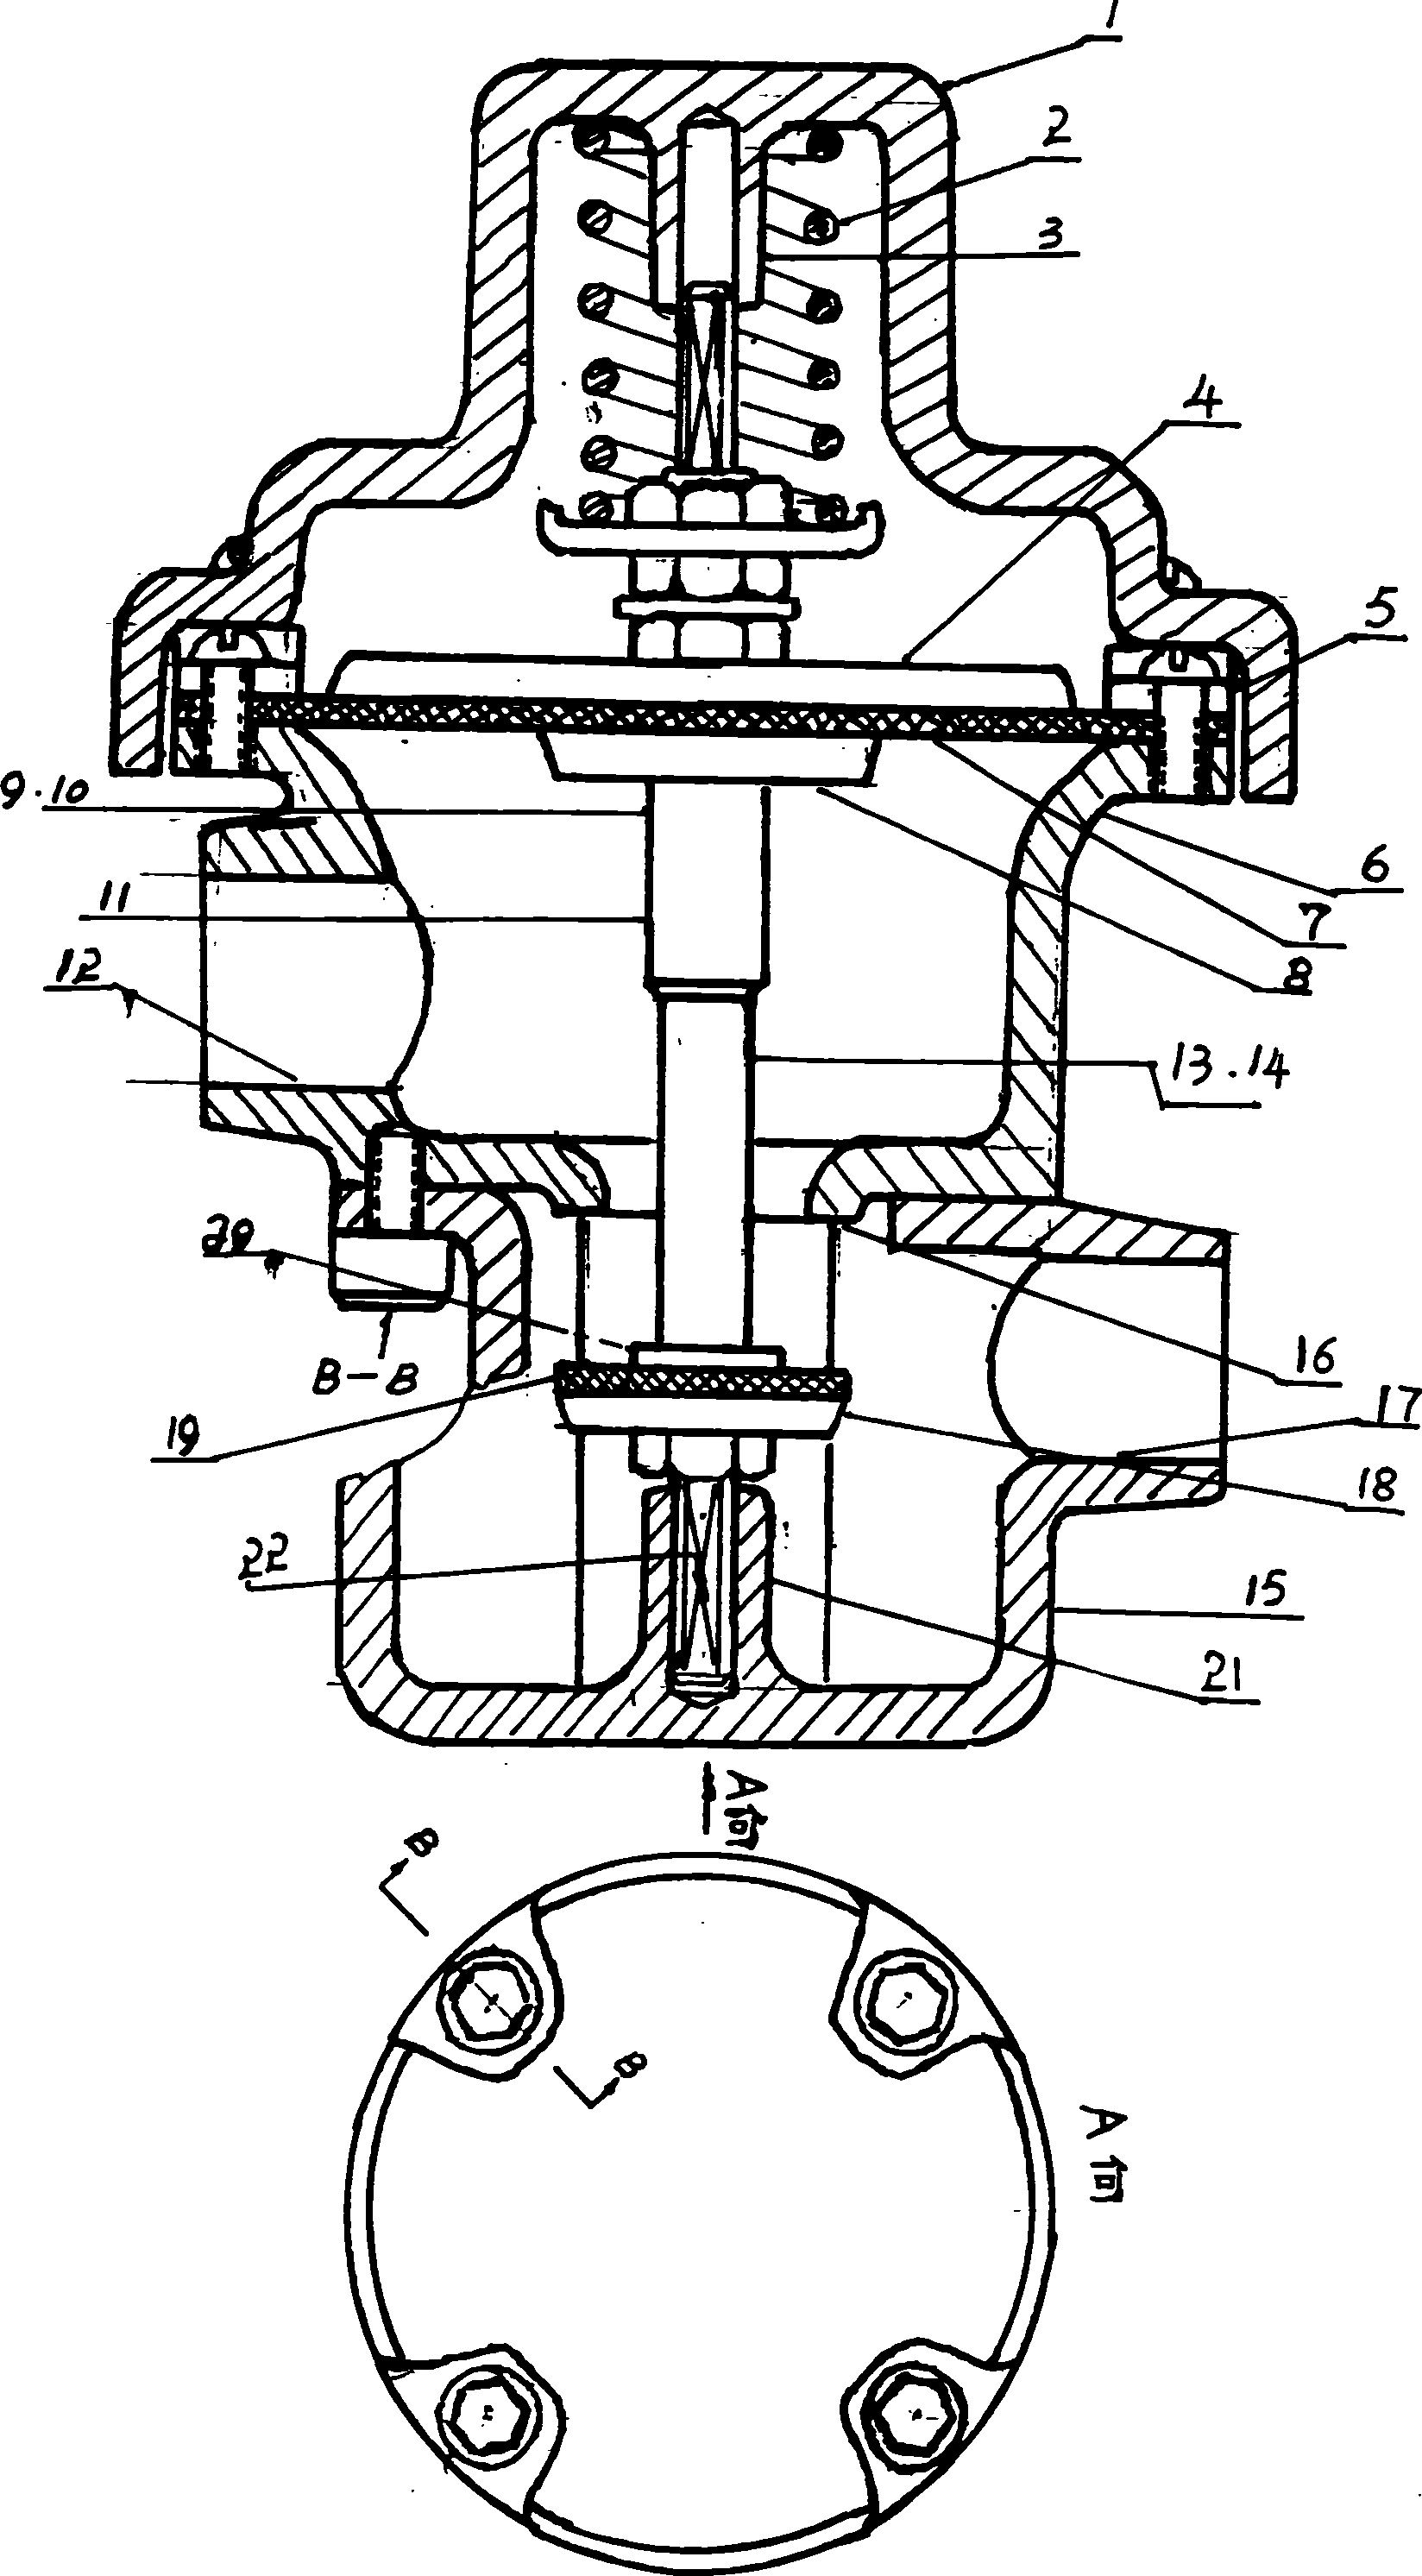 Micro-flow metering aid valve used in water meter